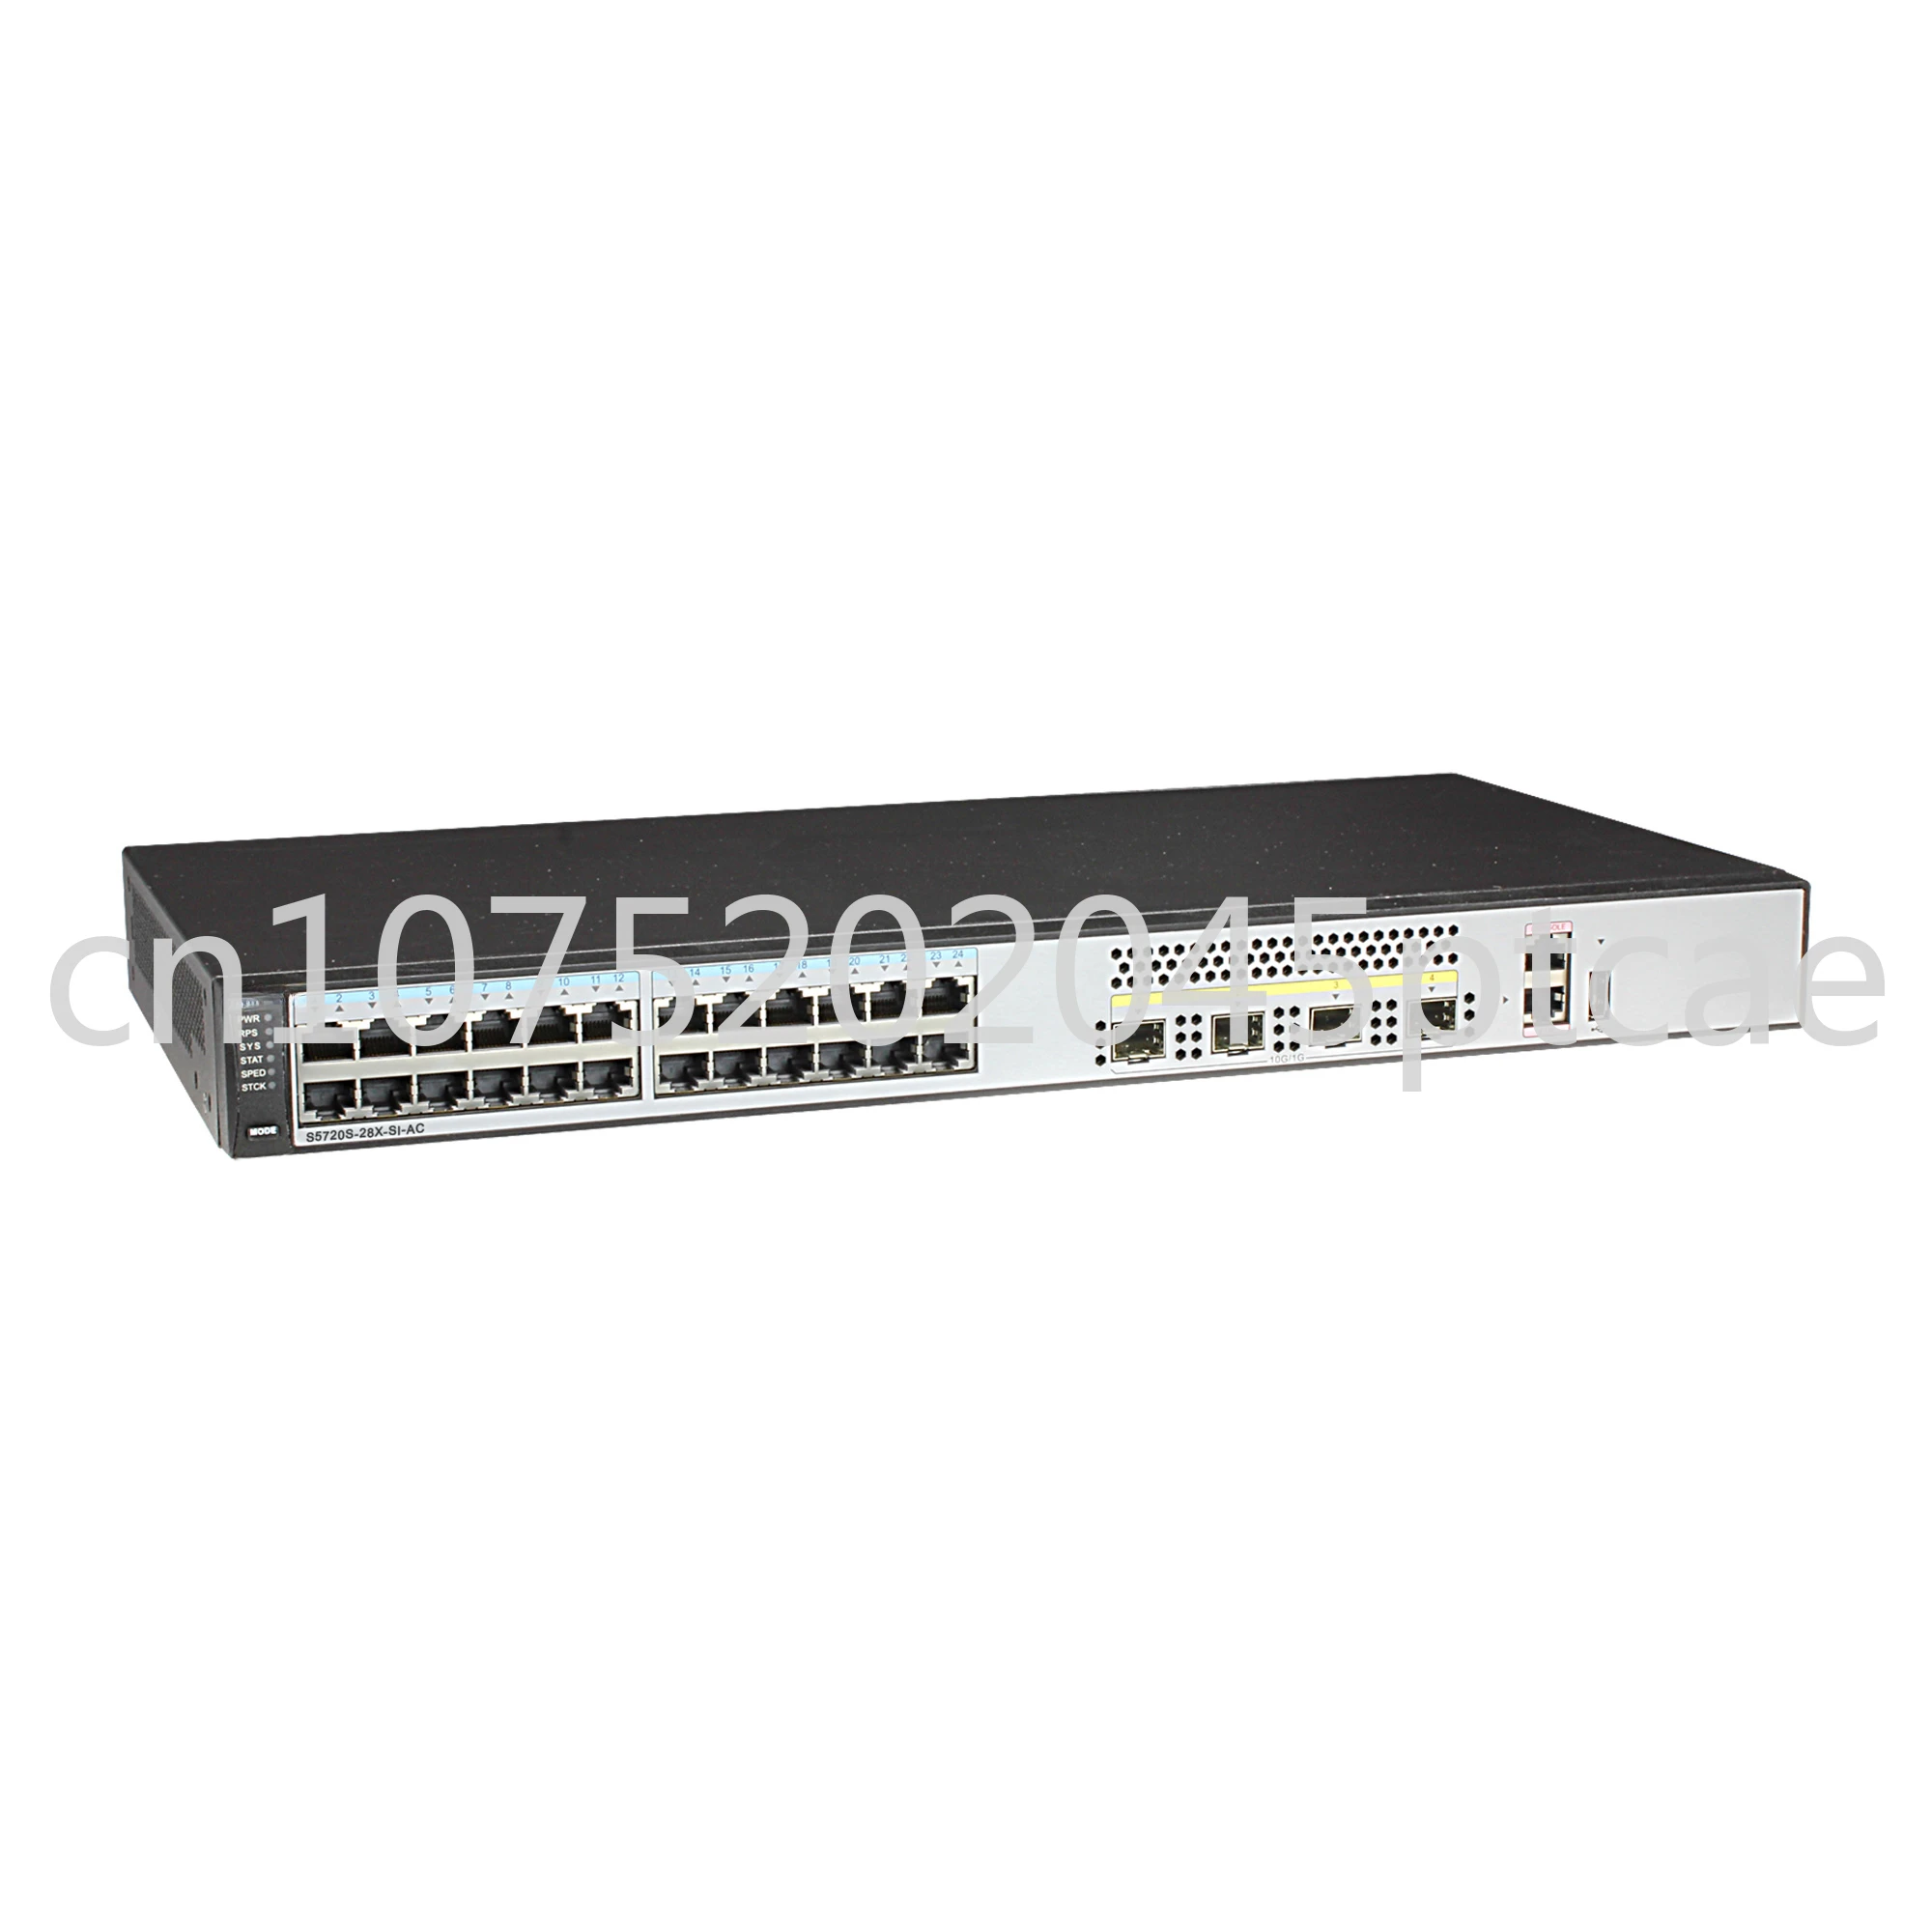 Коммутаторы S5720-28X-SI-AC Network Campus Ethernet с 24 *10/100/1000 портами, 4 *10 гигабайт SFP +